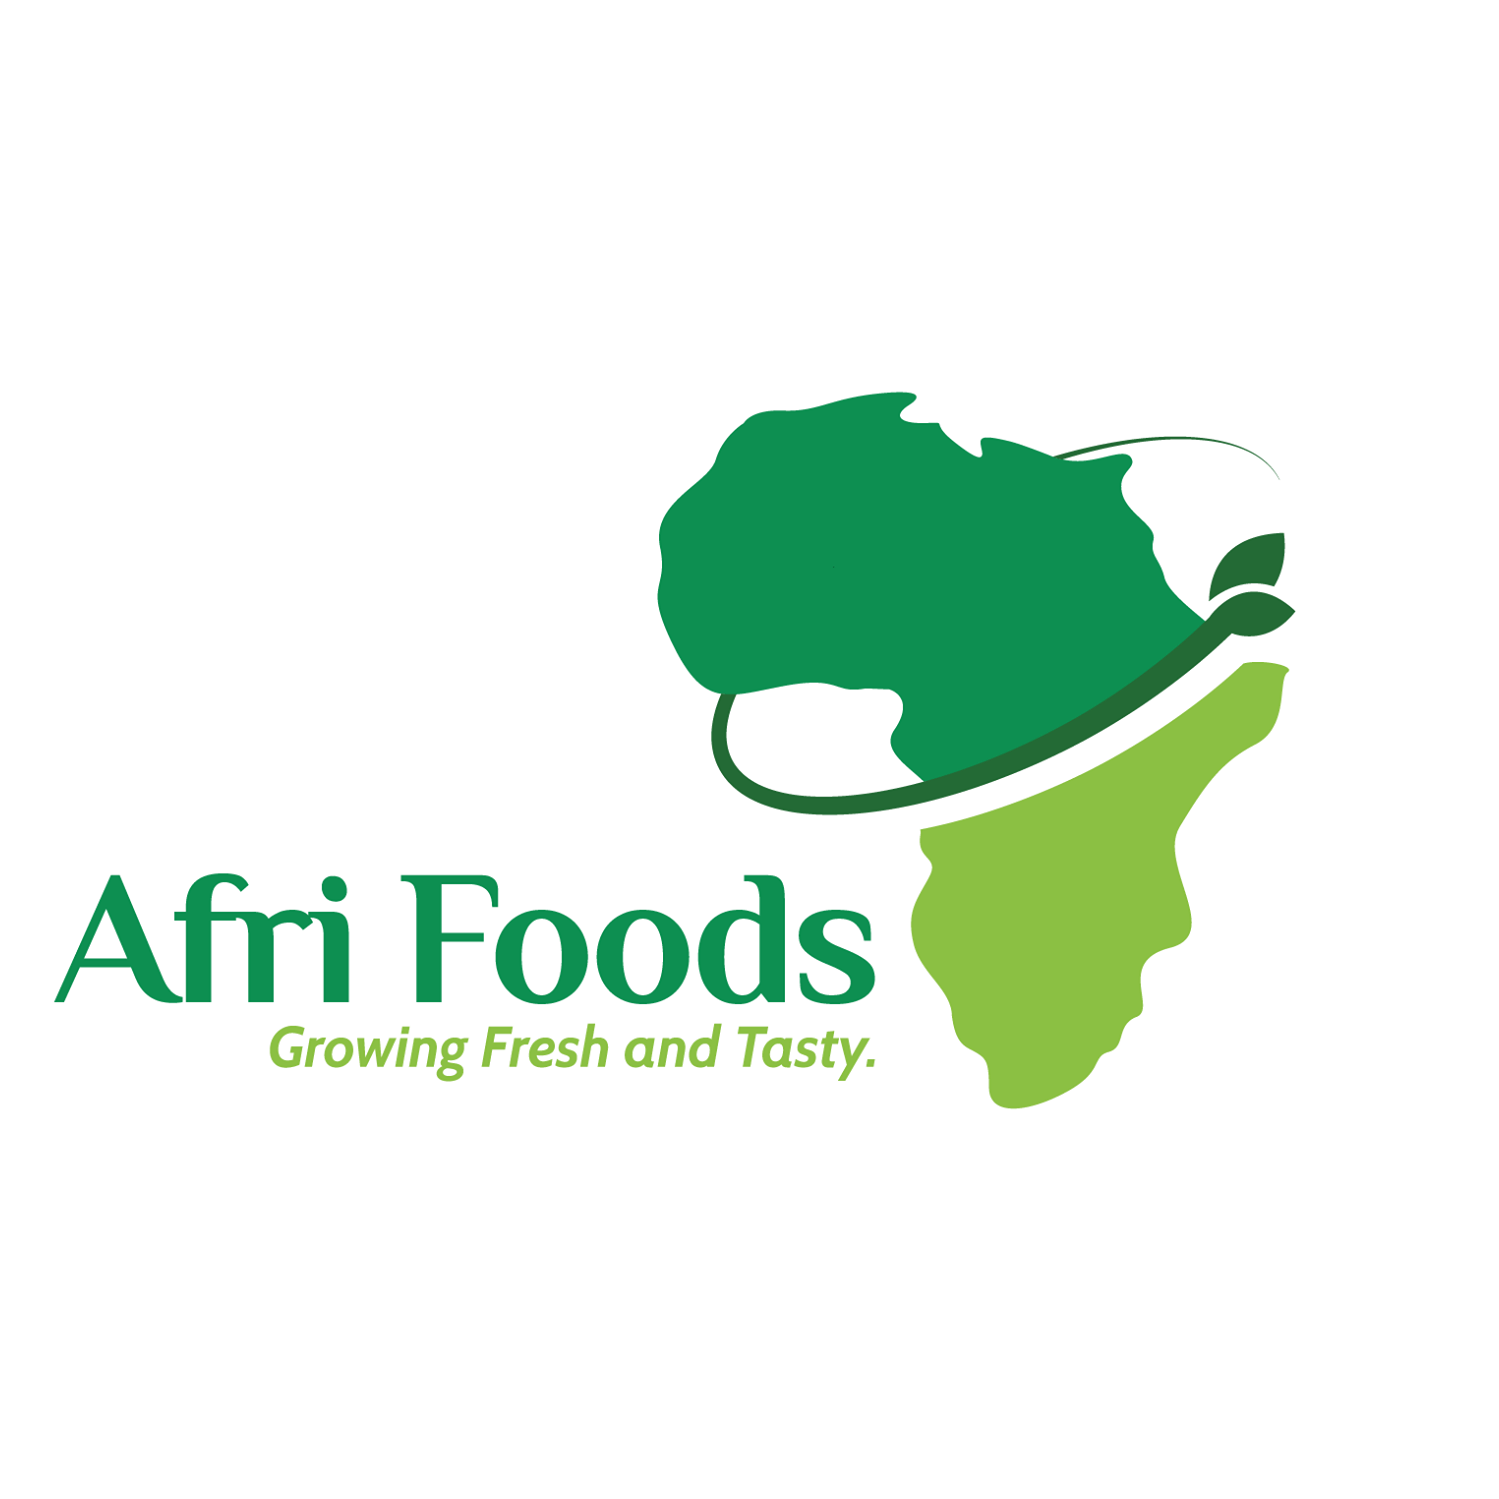 AFri Foods Rwanda